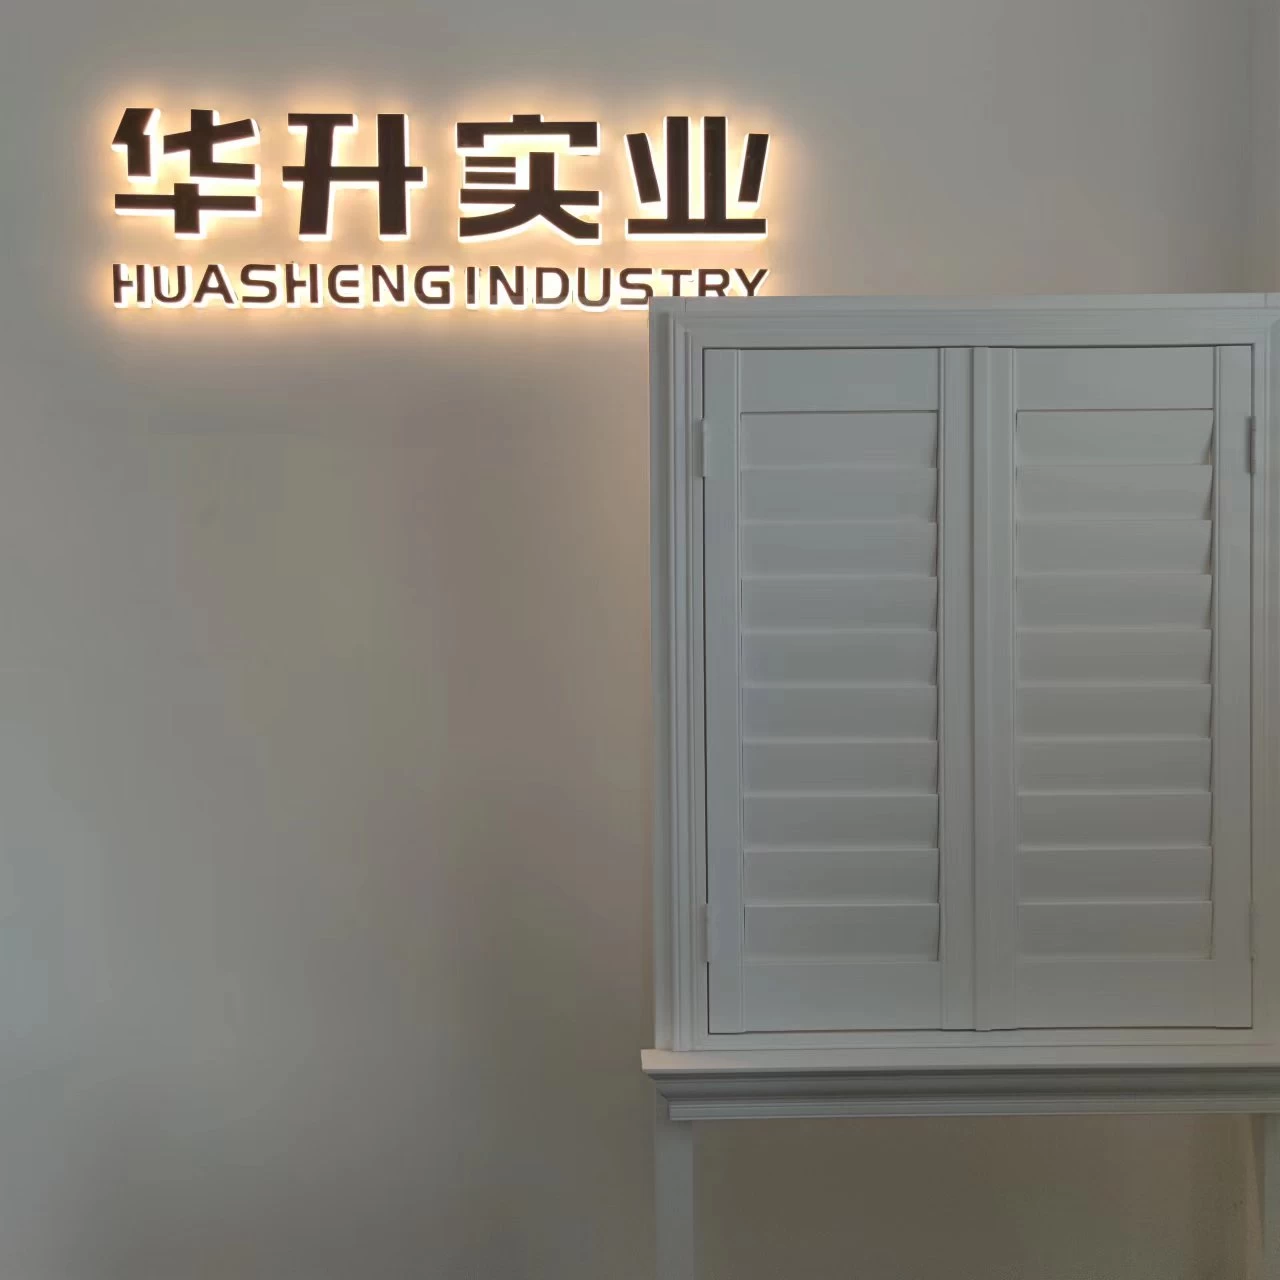 Heze Huasheng Накладка на подоконник, Китай Поставщик накладки на подоконник, Производство накладки на подоконник